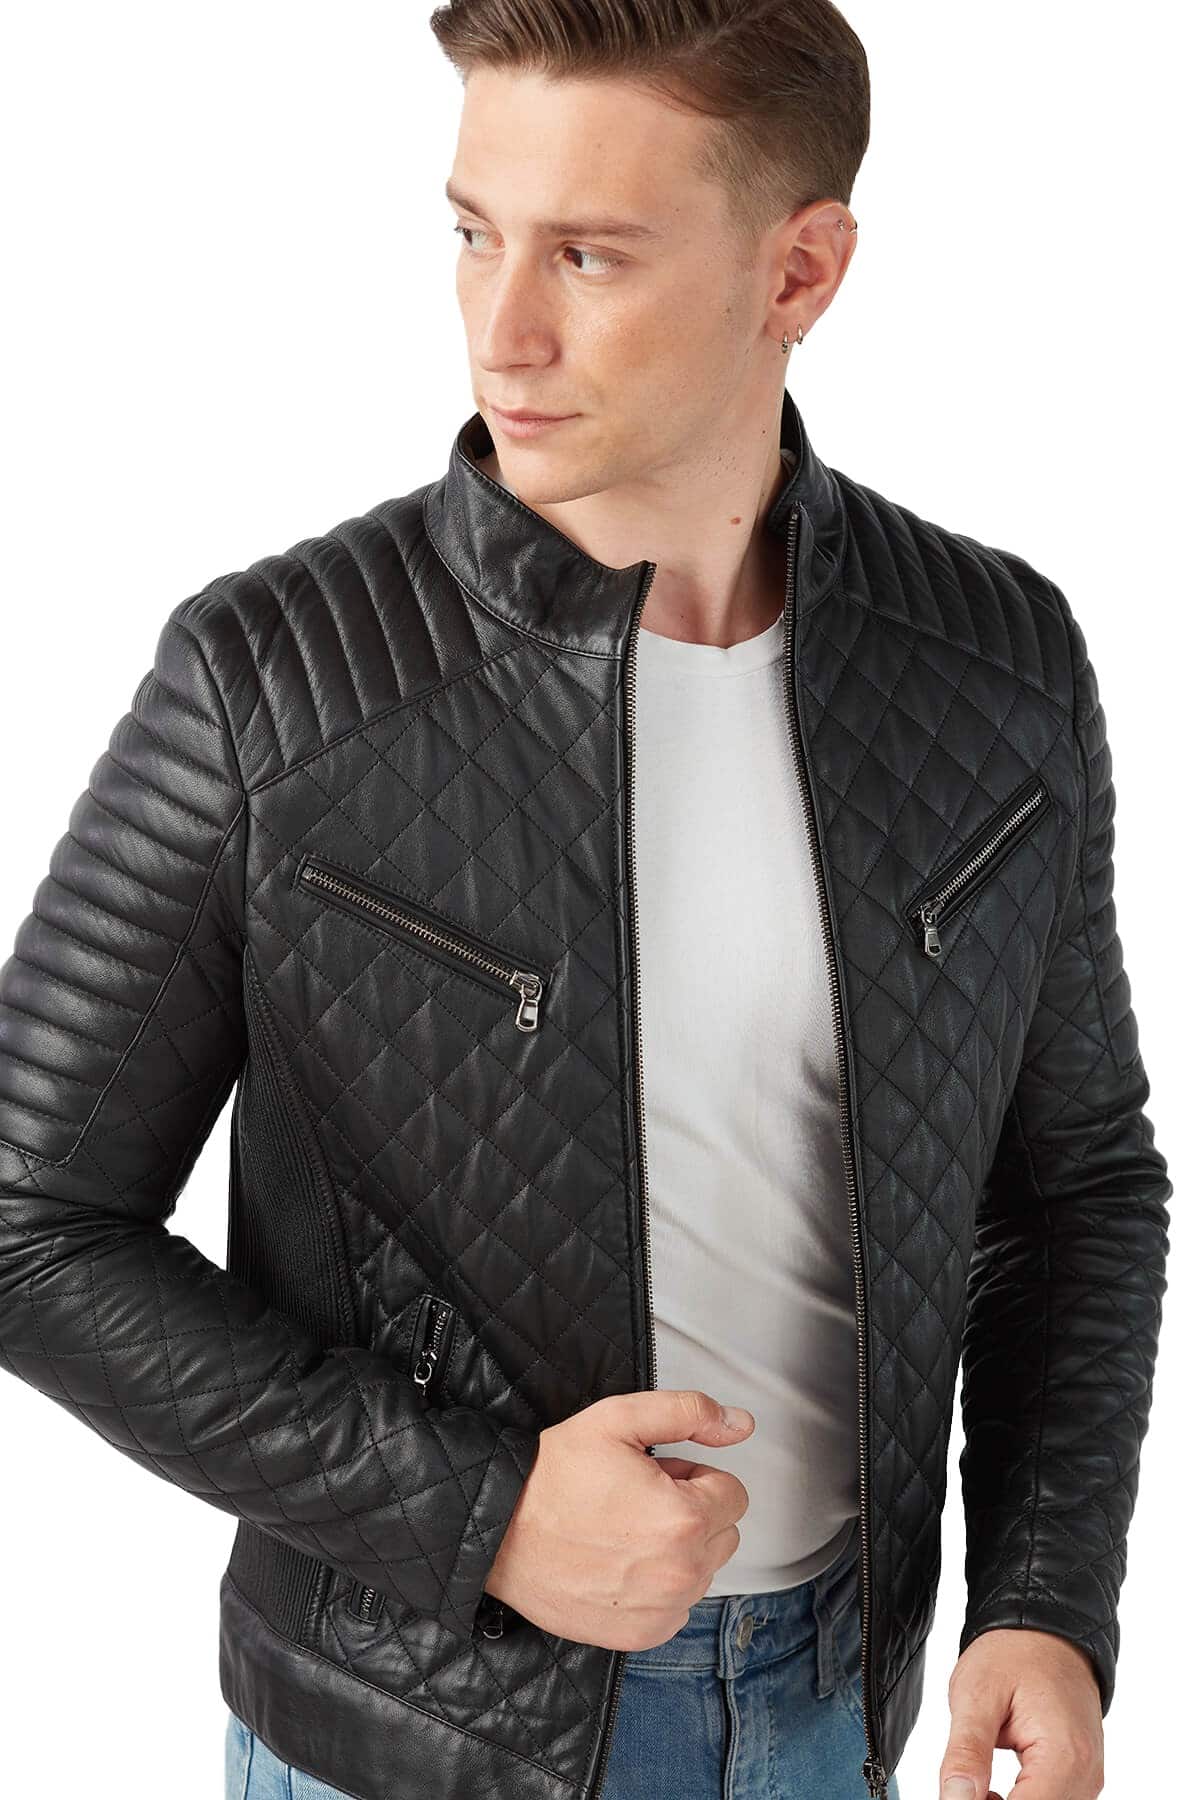 Alex Men's 100 % Real Black Leather Jacket